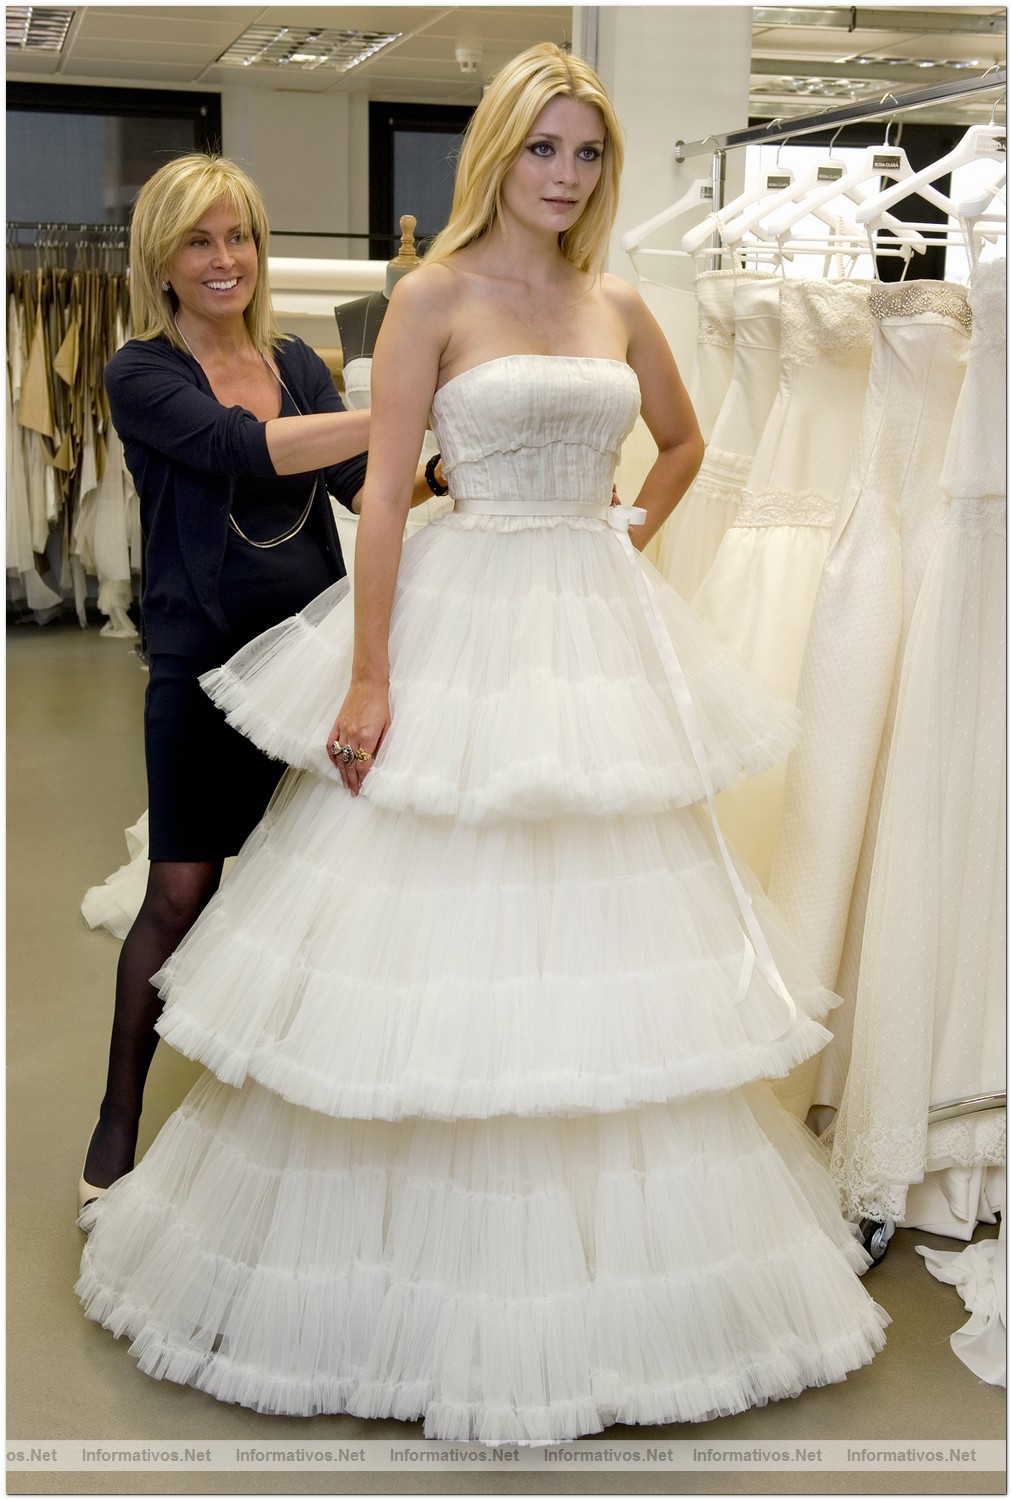 BCN17MAY010.- La actriz internacional Mischa Barton se viste de blanco por Rosa Clará en el fitting previo al primer desfile de la Bridal Week